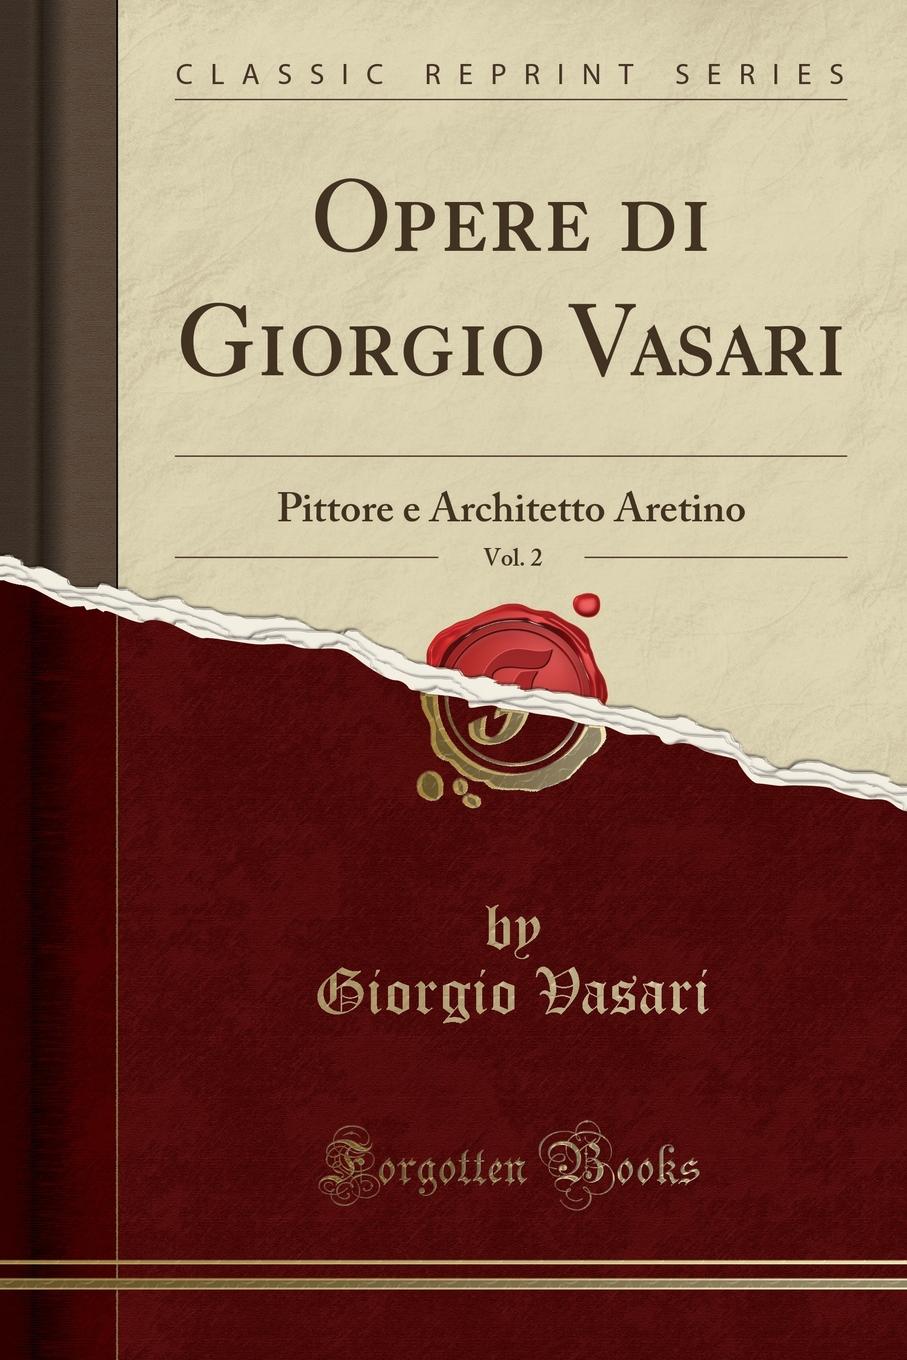 Opere di Giorgio Vasari, Vol. 2. Pittore e Architetto Aretino (Classic Reprint)